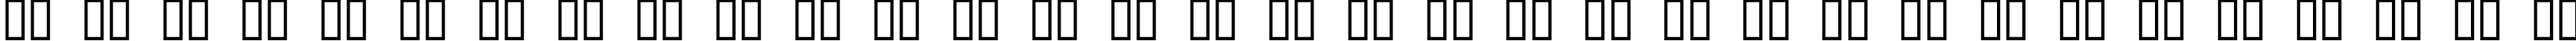 Пример написания русского алфавита шрифтом DavidaC